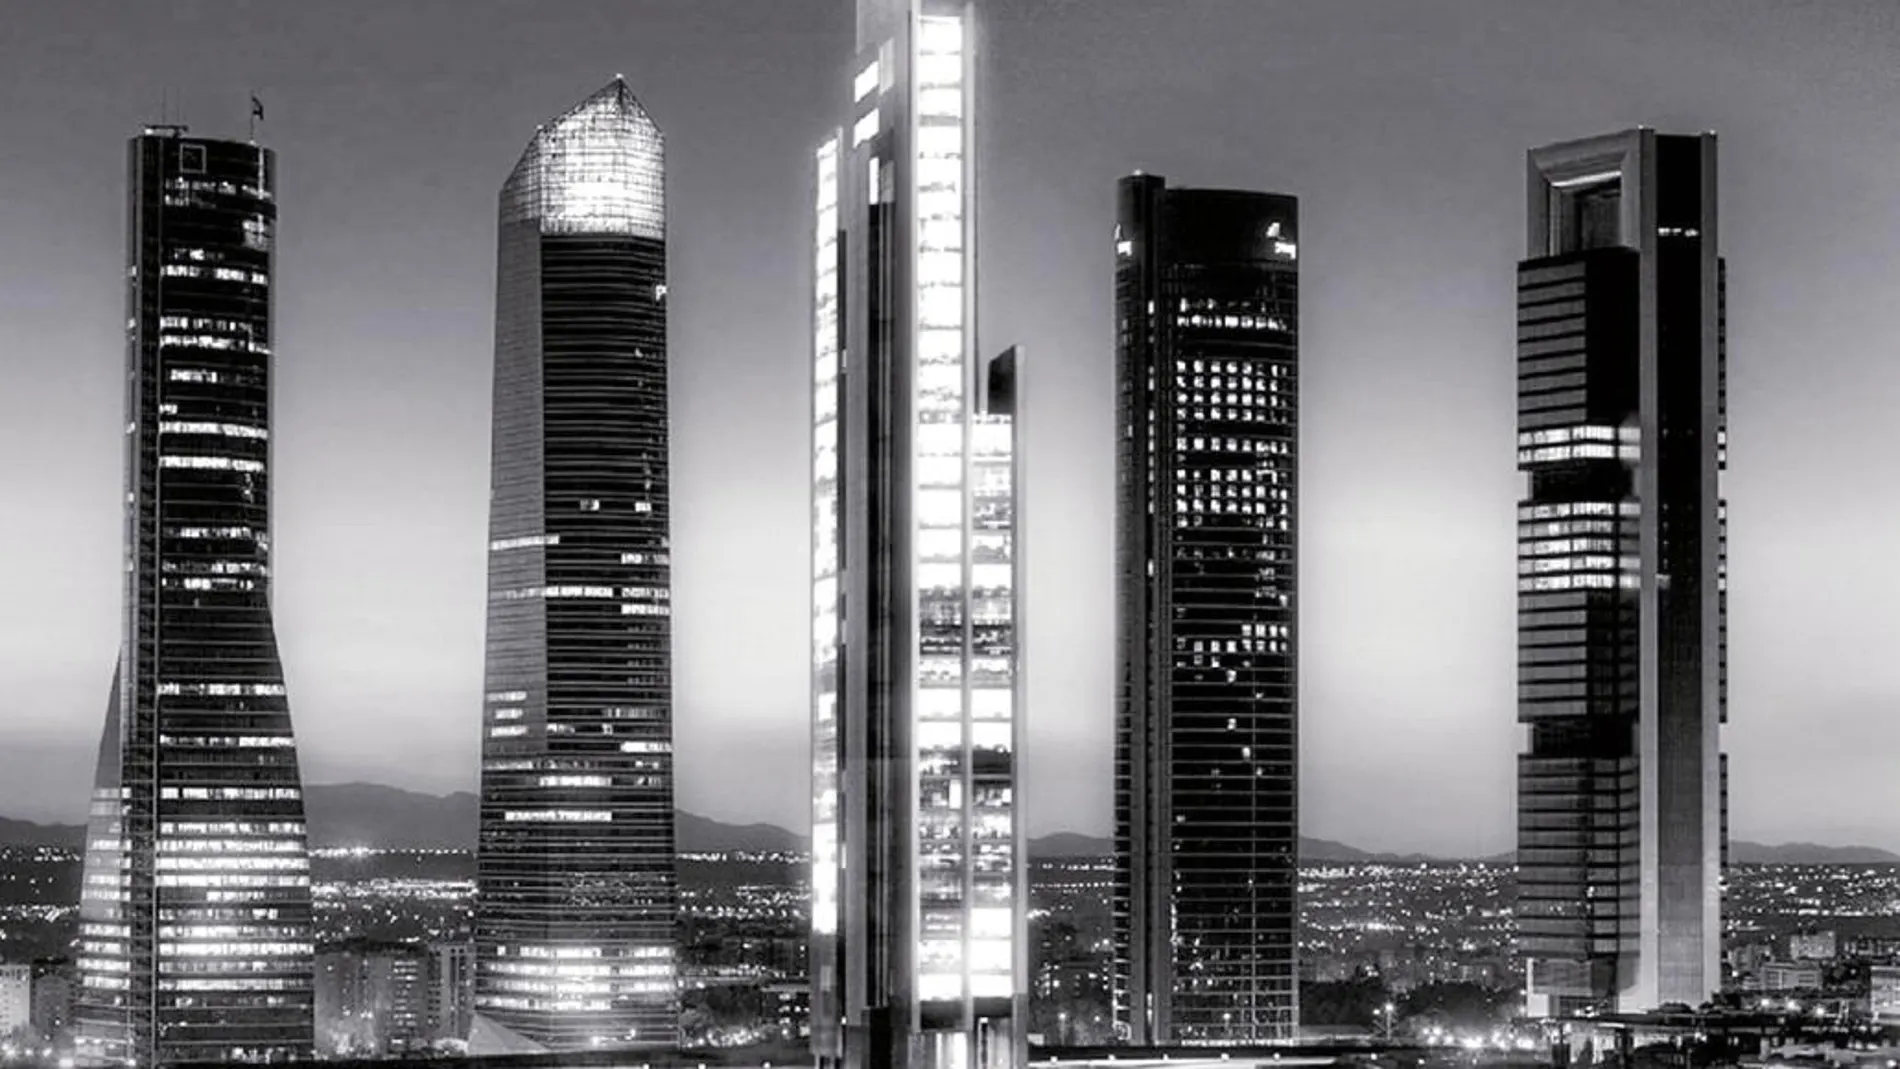 A las torres Espacio, Cristal, Sacyr y Caja Madrid se les sumará en 2019 un nuevo rascacielos de 181 metros de altura, la torre Caleido